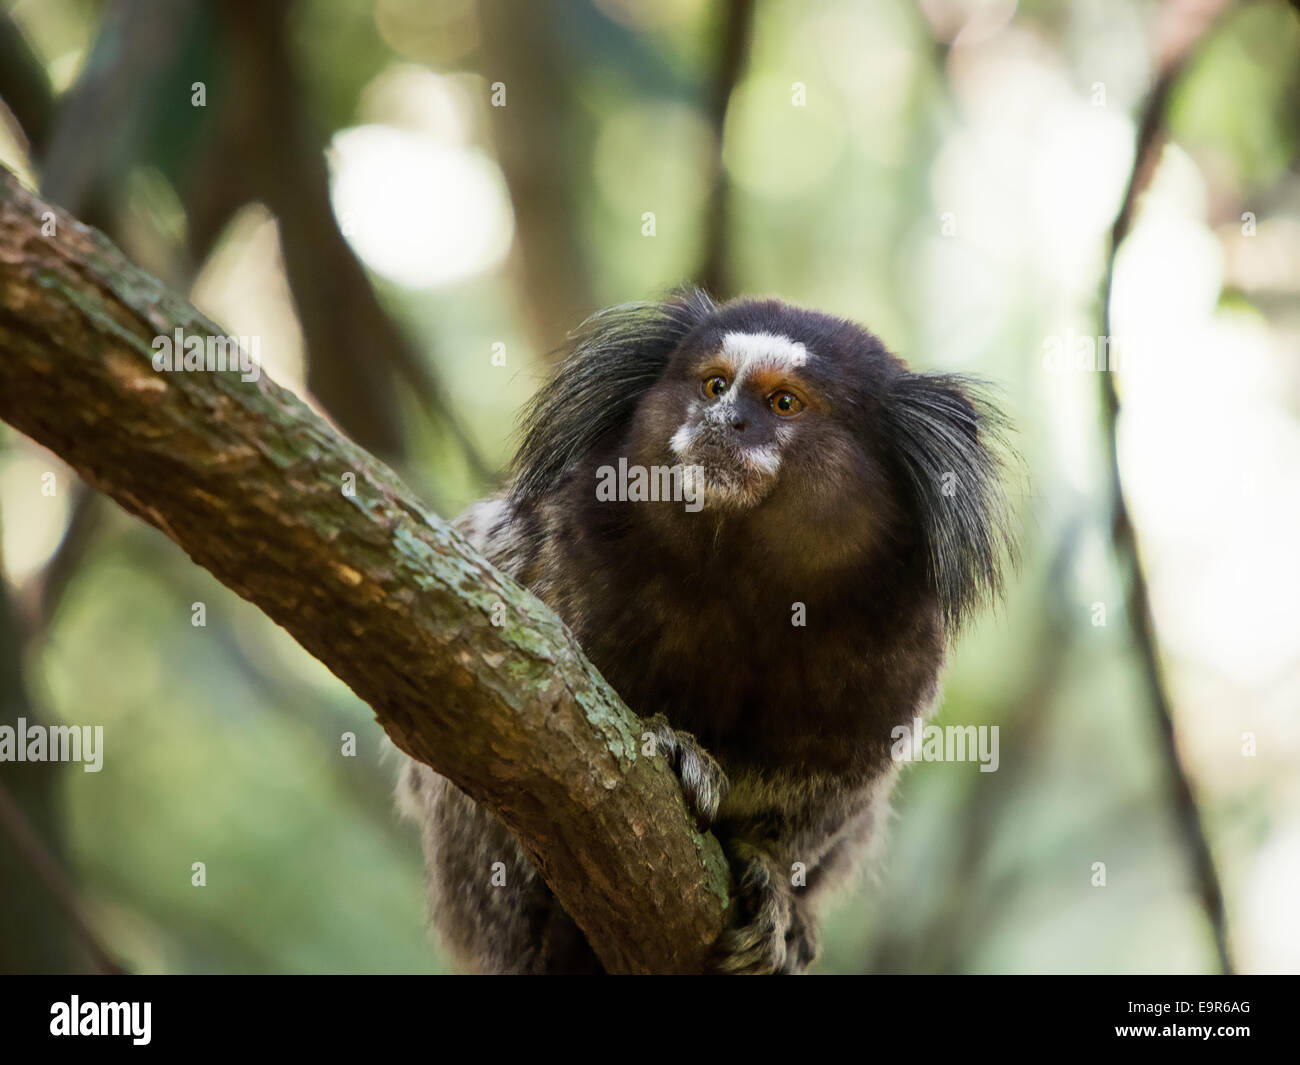 Sagui brésilien monkey dans la forêt tropicale de Rio de Janeiro, Brésil. Sagui le singe est le plus petit des primates simiens. Banque D'Images